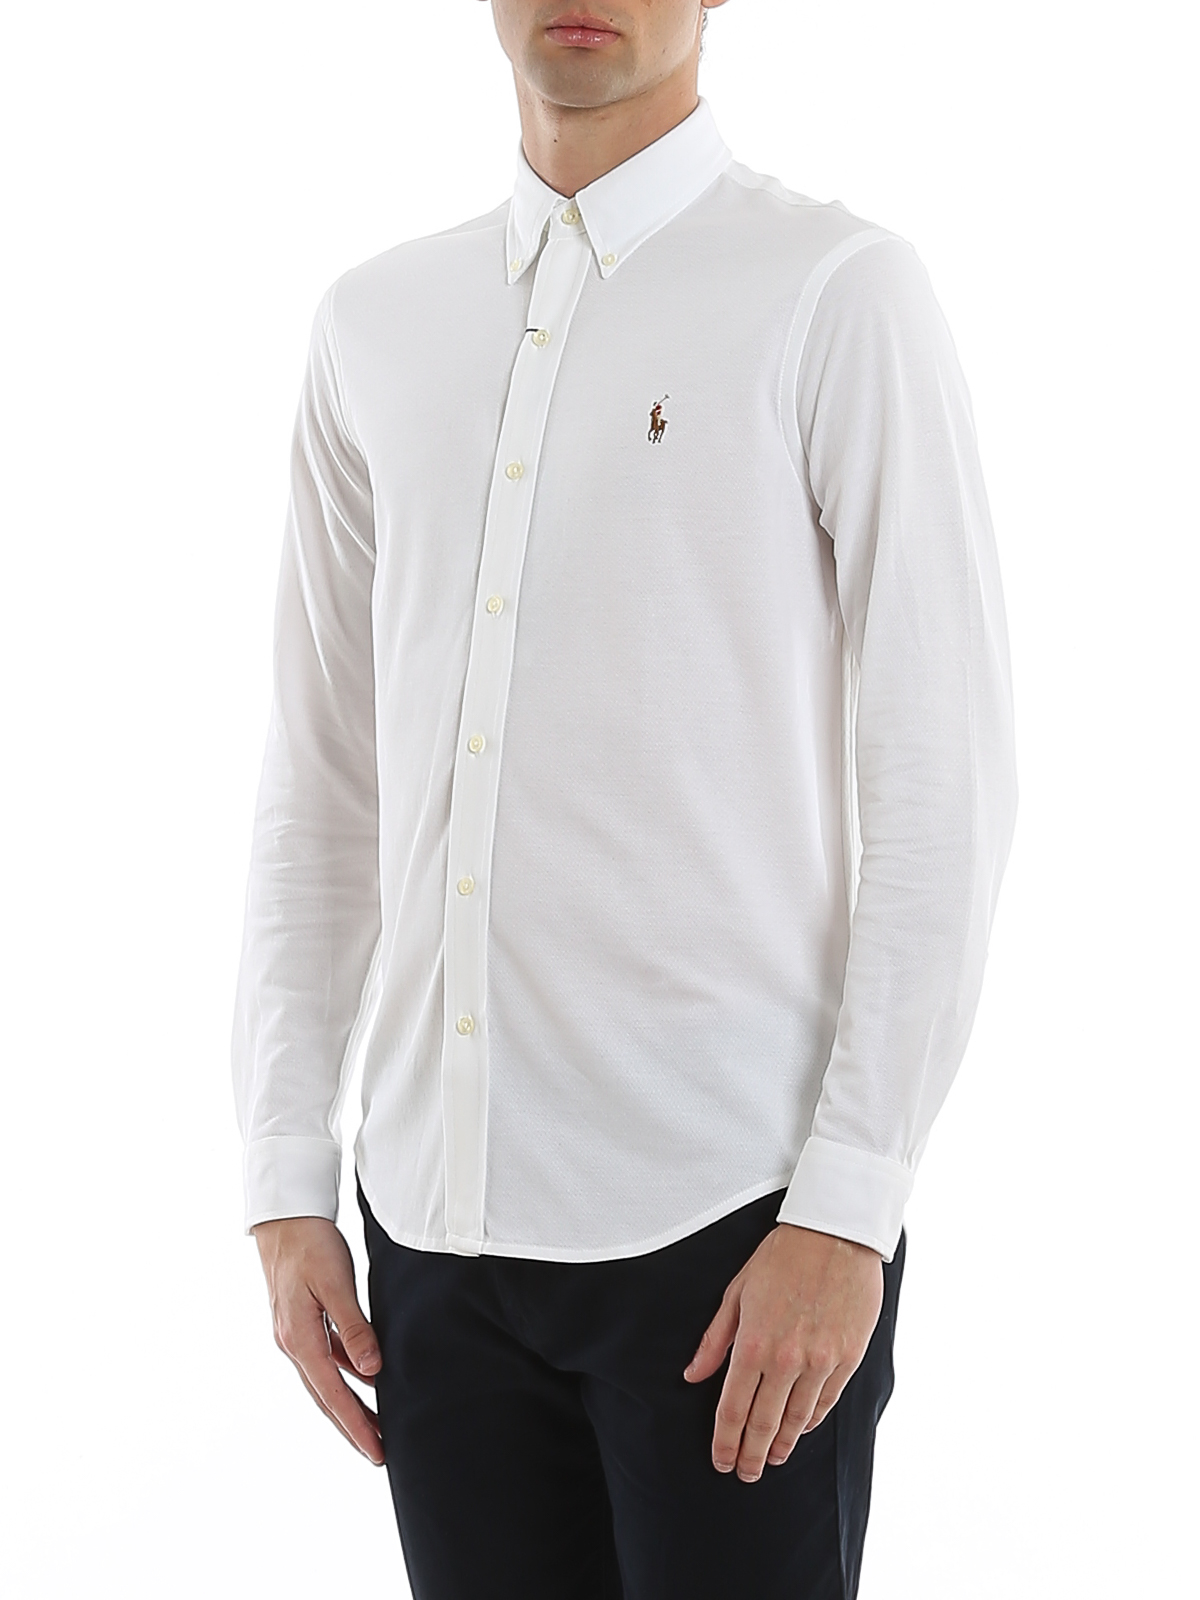 Nathaniel Ward Maan Echter Shirts Polo Ralph Lauren - Oxford knit cotton pique shirt - 710728724001